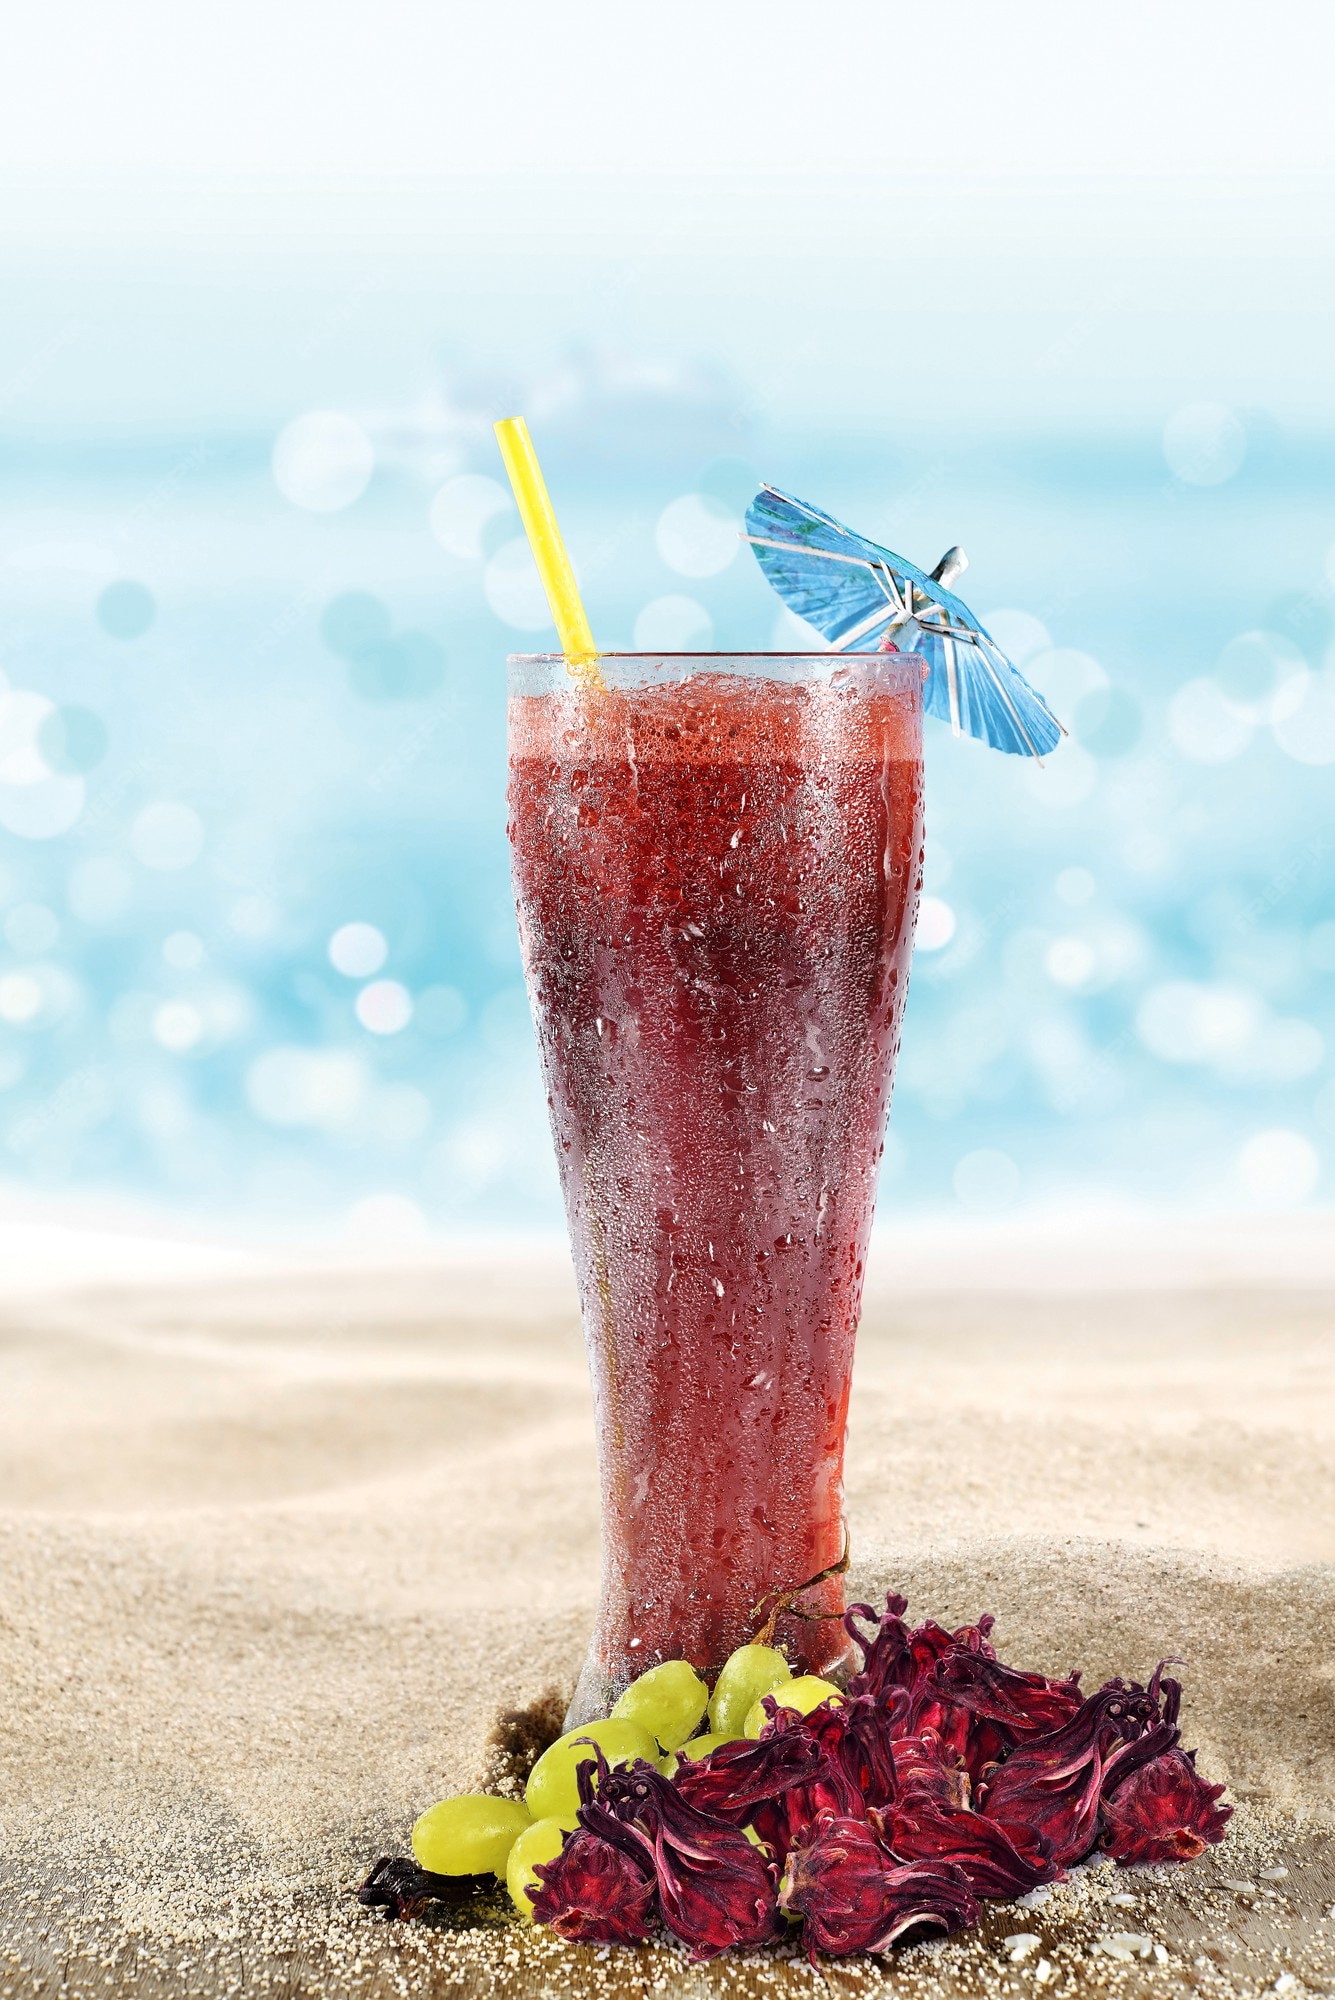 Característica Zoológico de noche Discutir Vaso con agua de jamaica y uvas en la arena de la playa | Foto Premium